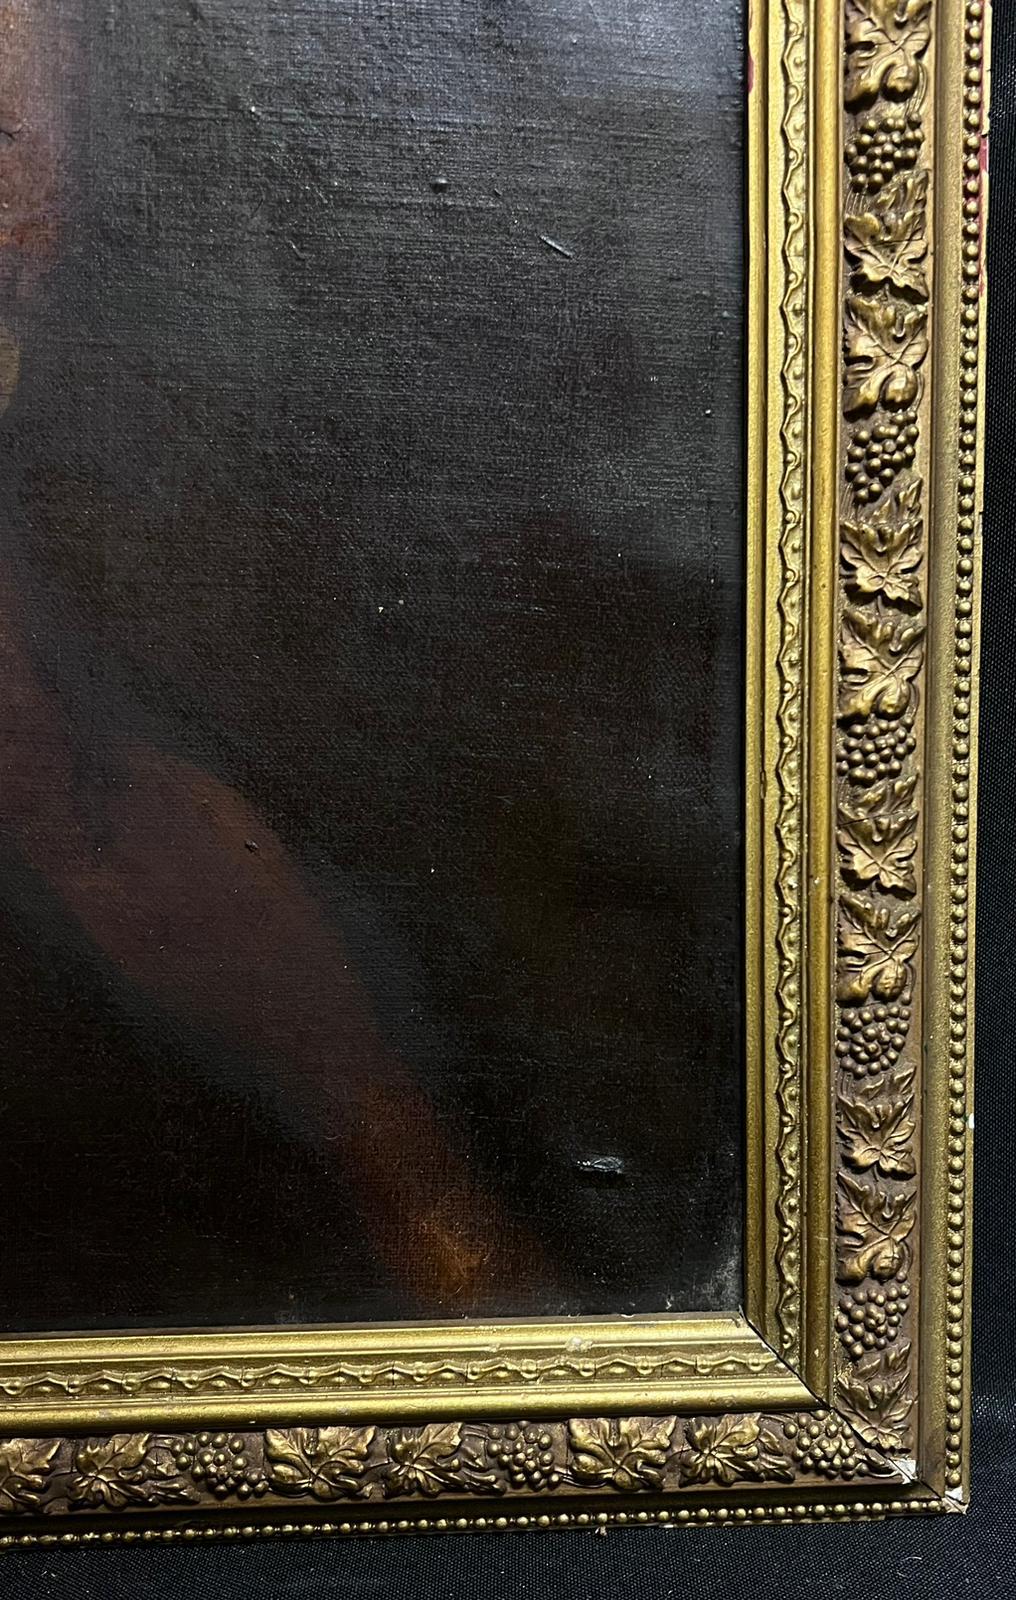 Italienischer alter Meister des frühen 17. Jahrhunderts, halbakt, Mann mit Dagger, Ölgemälde (Alte Meister), Painting, von Michelangelo Merisi da Caravaggio